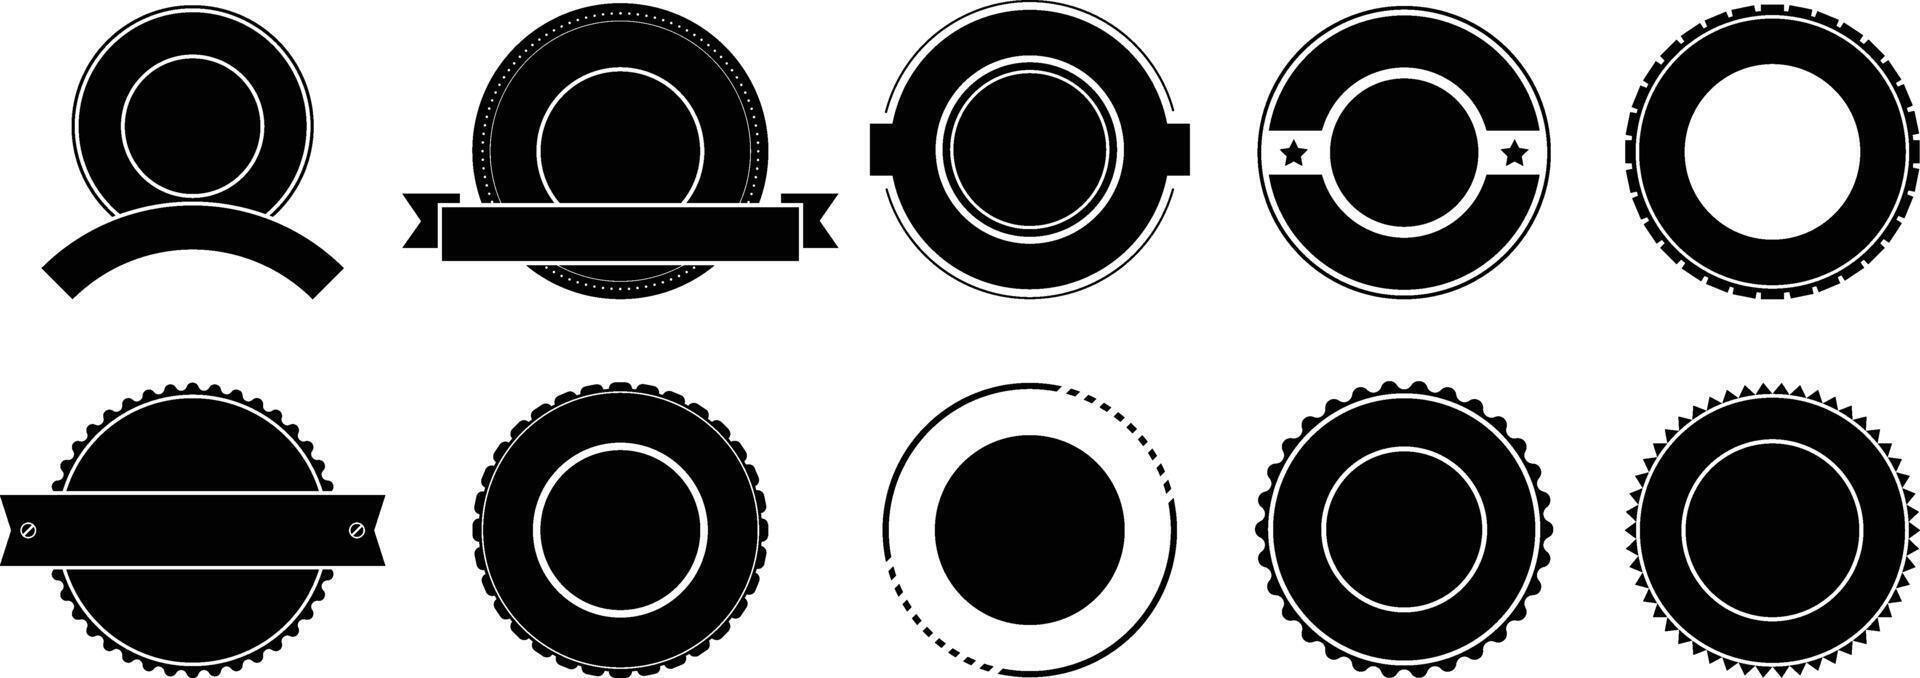 runda cirkulär bricka logotyp uppsättning vektor